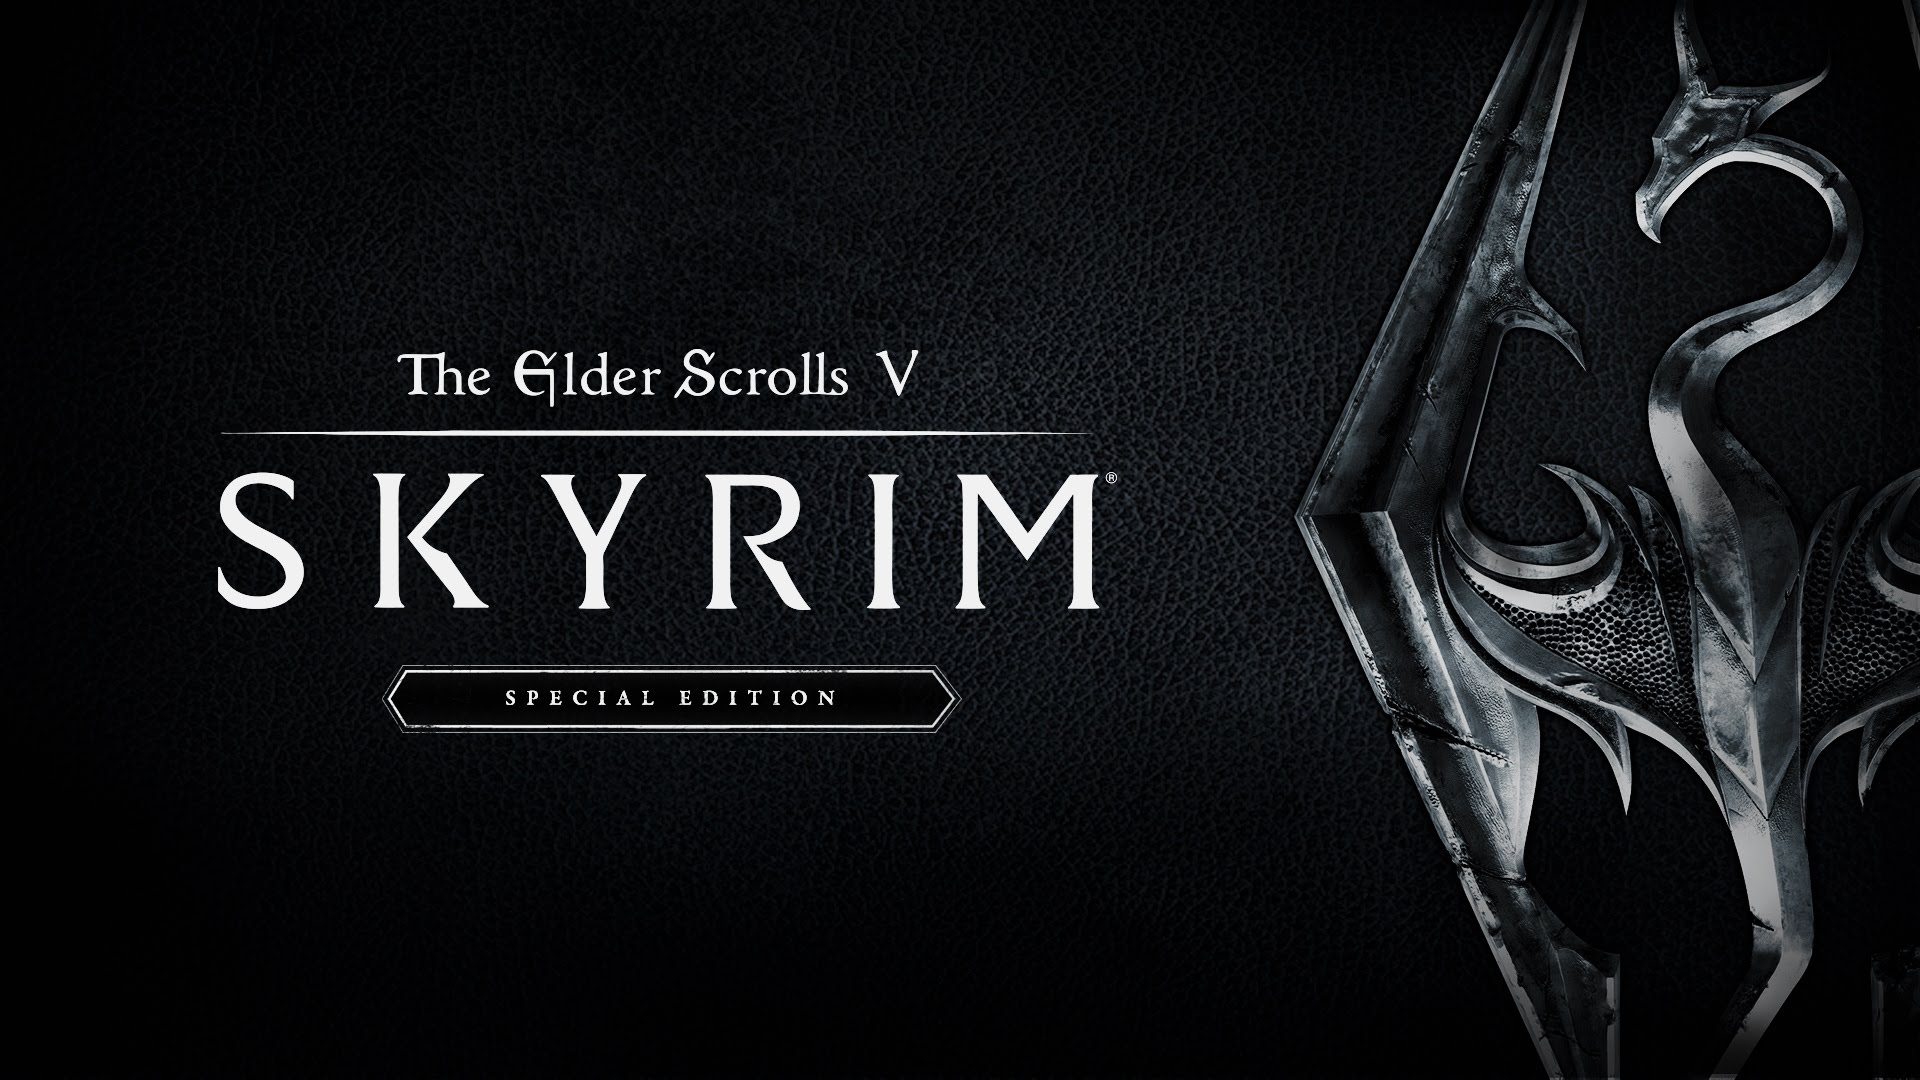 The Elder Scrolls V Skyrim Switch